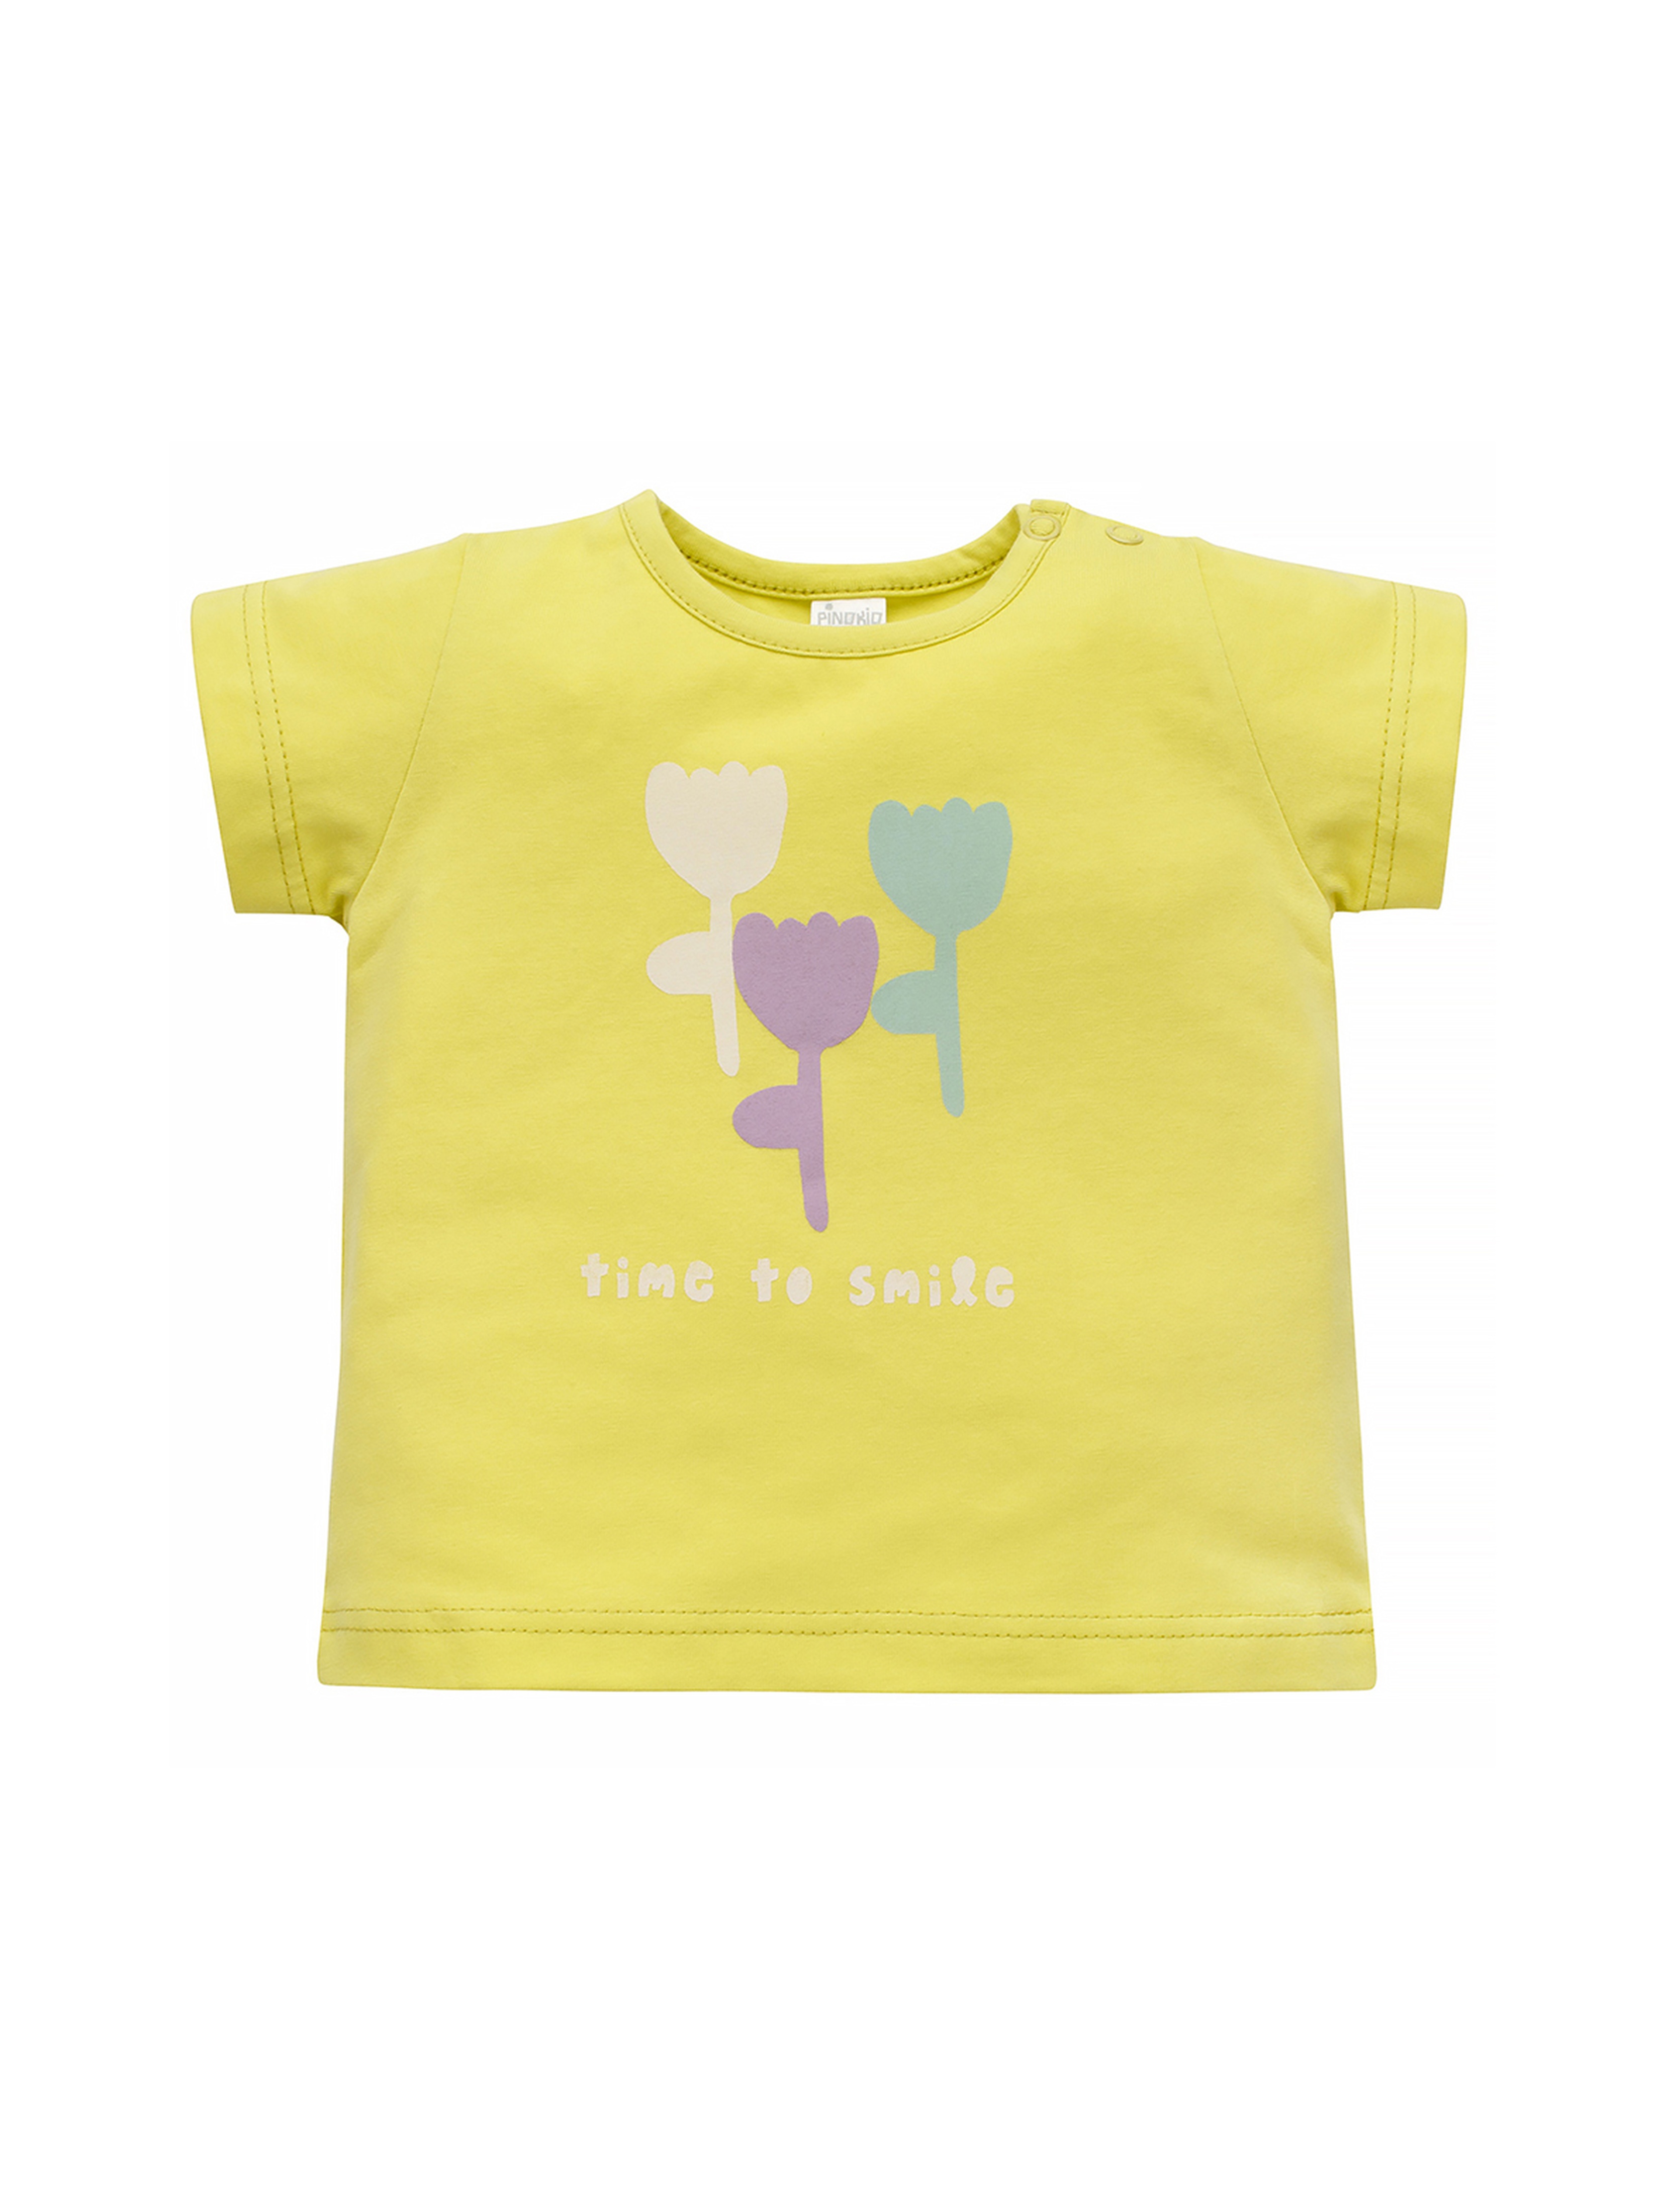 Koszulka dziewczęca z kwiatkami żółta